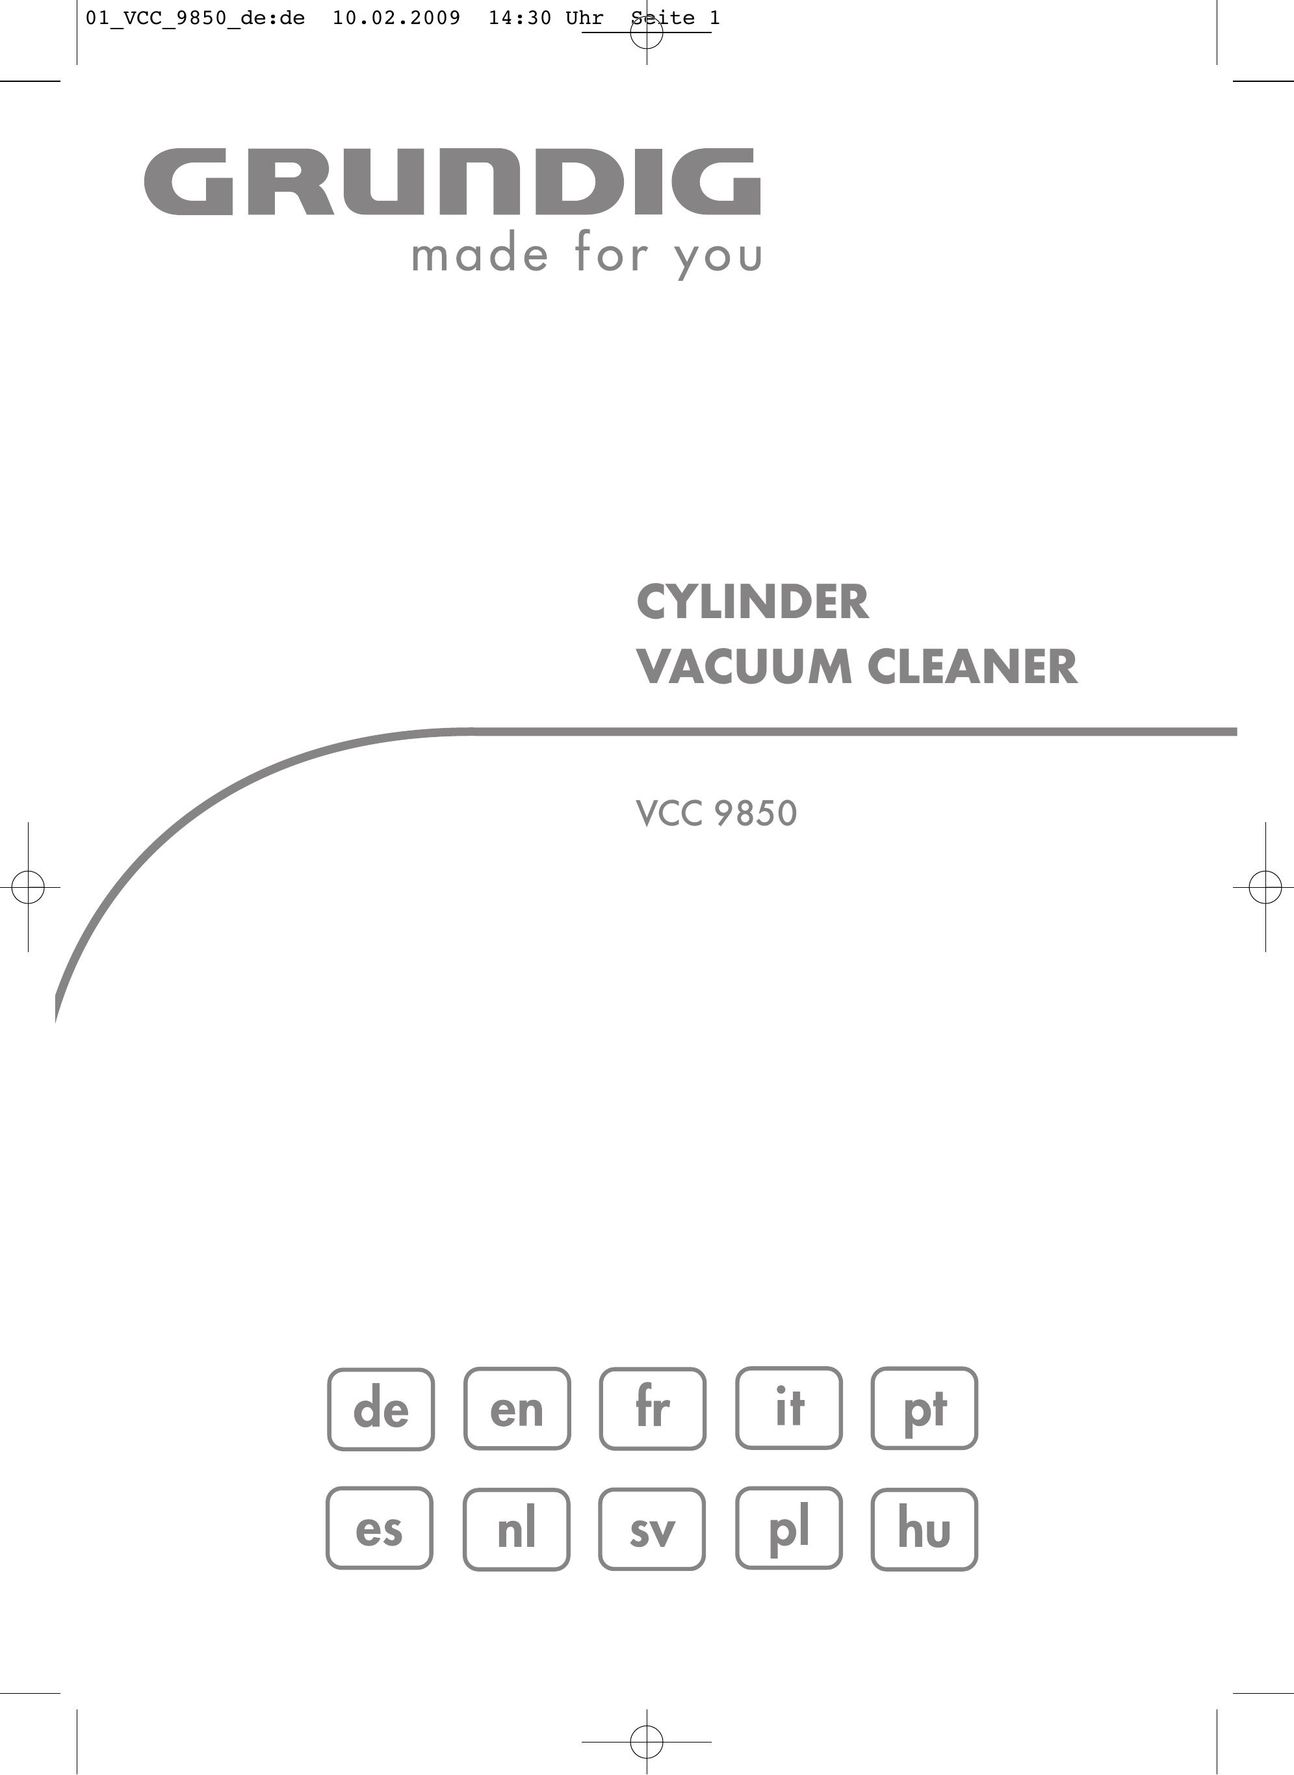 Grundig VCC9850 Vacuum Cleaner User Manual